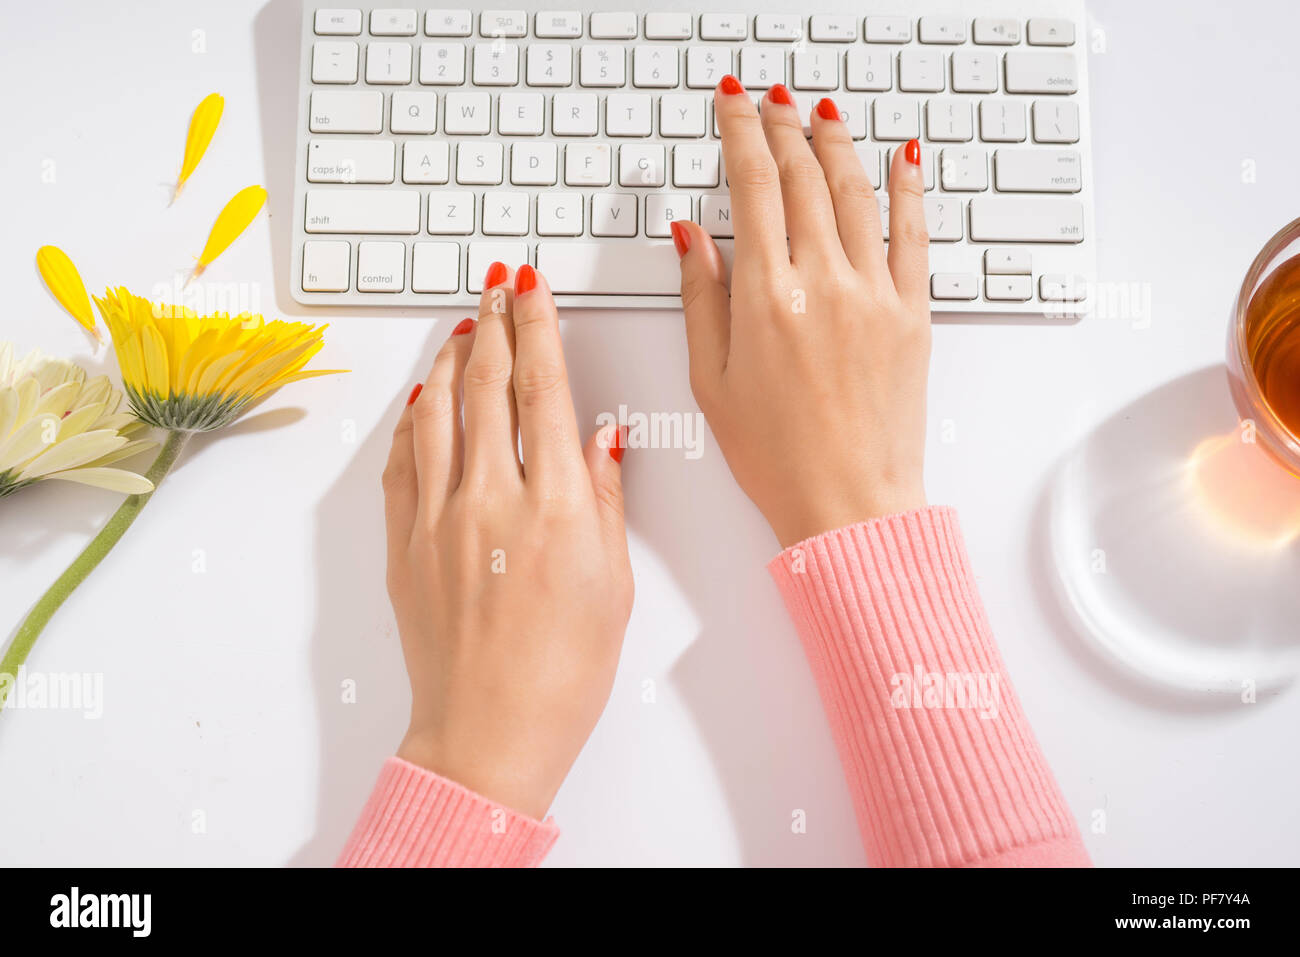 Frauenhand auf einer Computertastatur hautnah - Eingabe Stockfoto